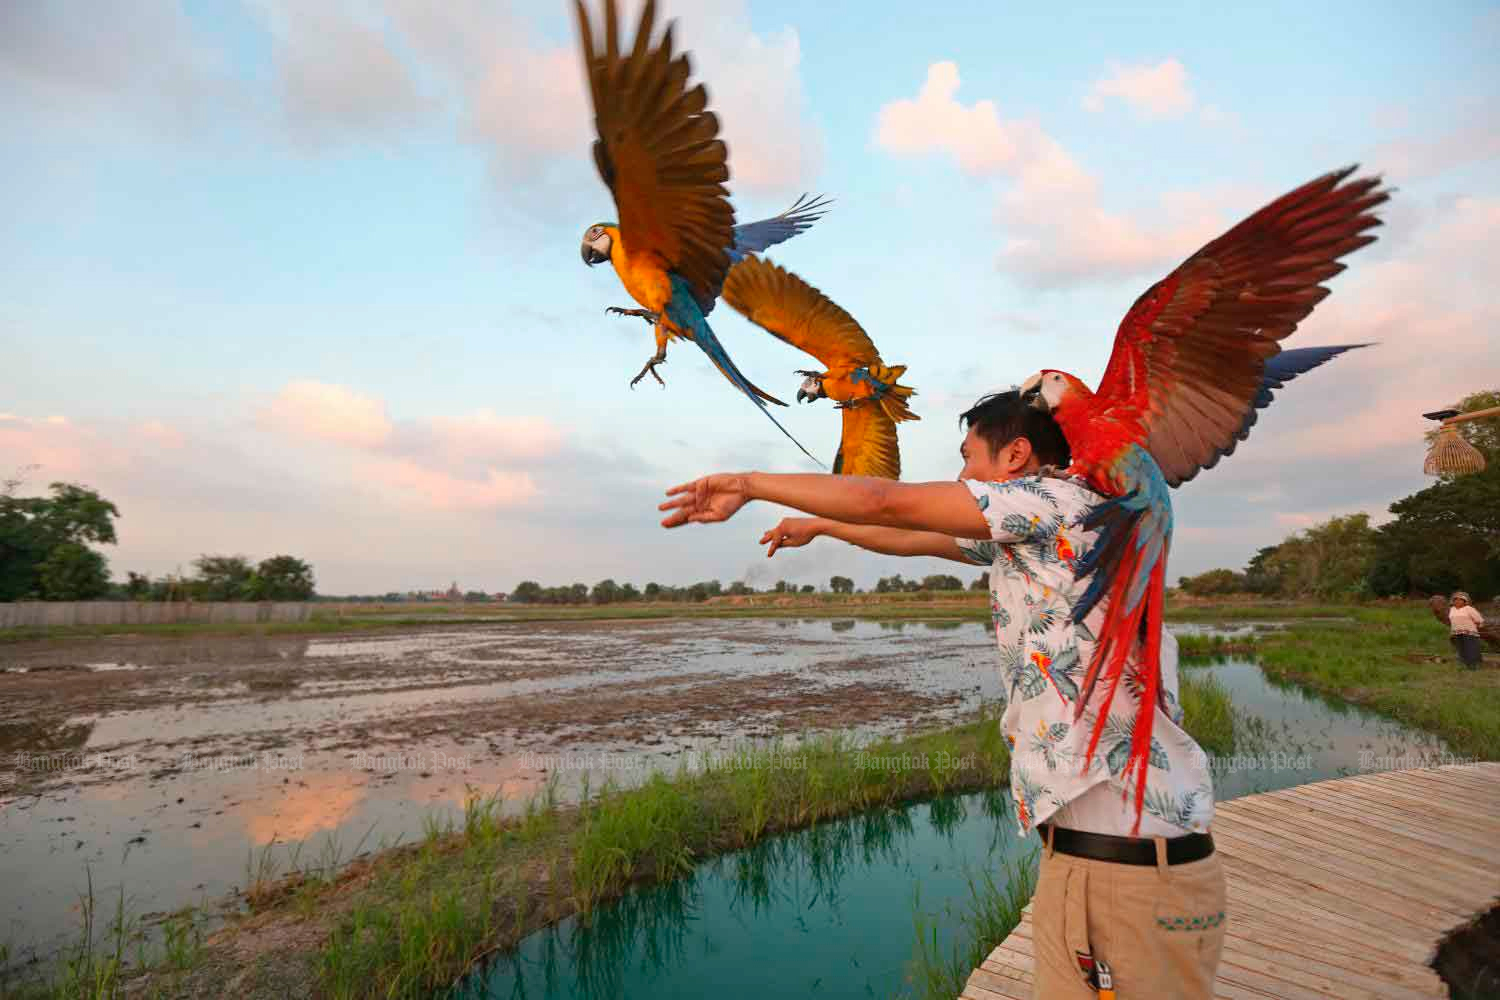 Джаккрит Пунгсомджит, профессиональный дрессировщик птиц из Аюттхайя. Фото Варут Хируниятхеб